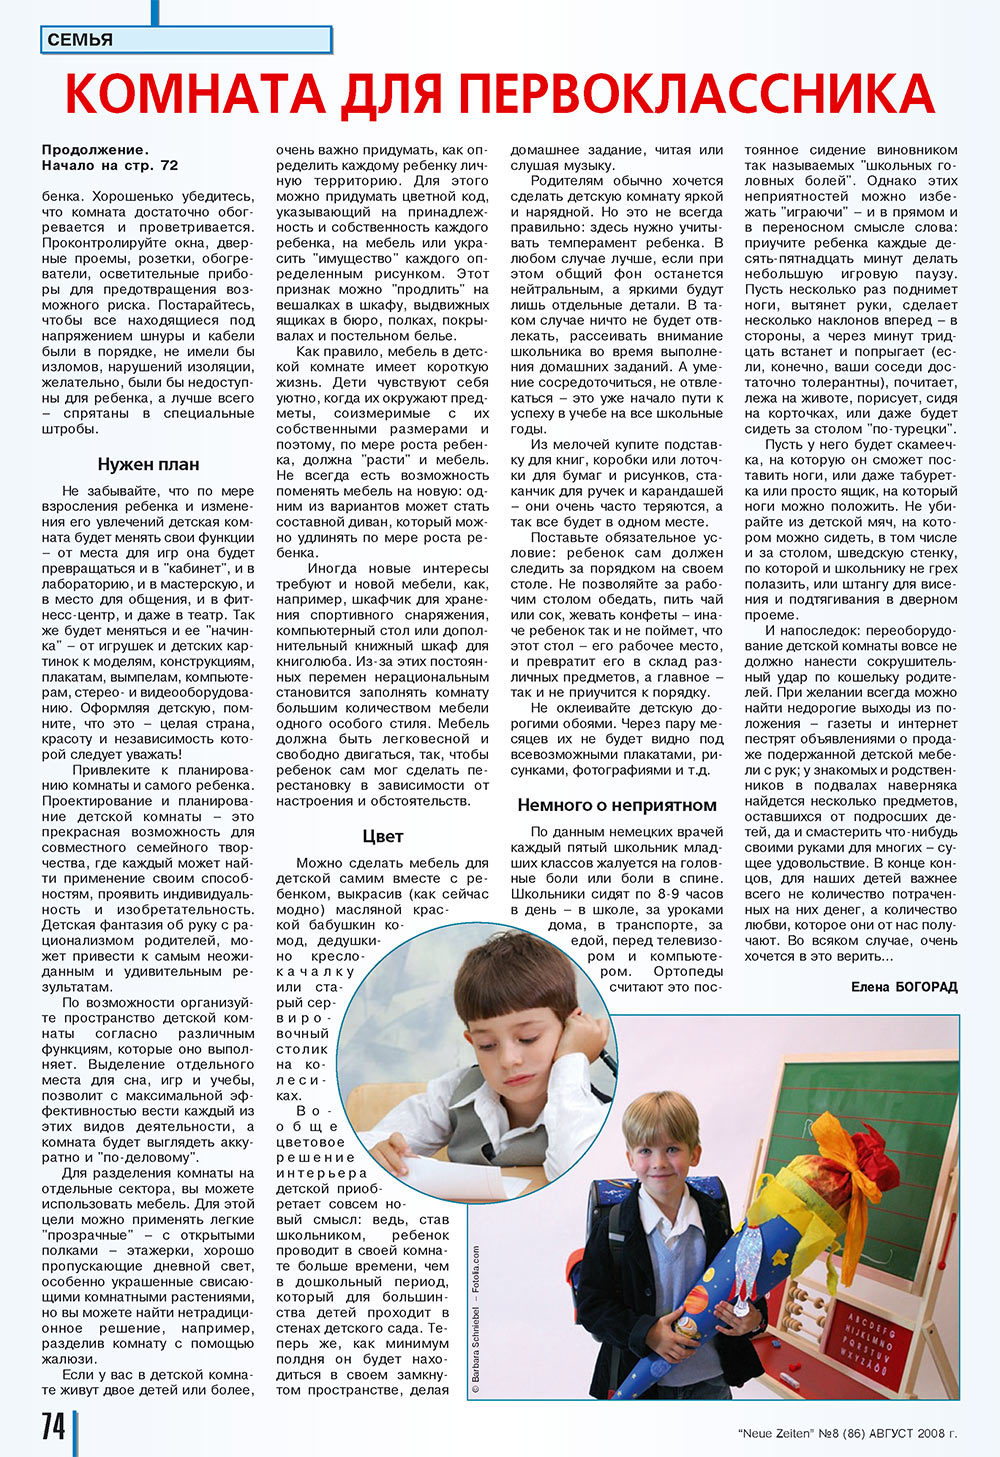 Neue Zeiten, журнал. 2008 №8 стр.74